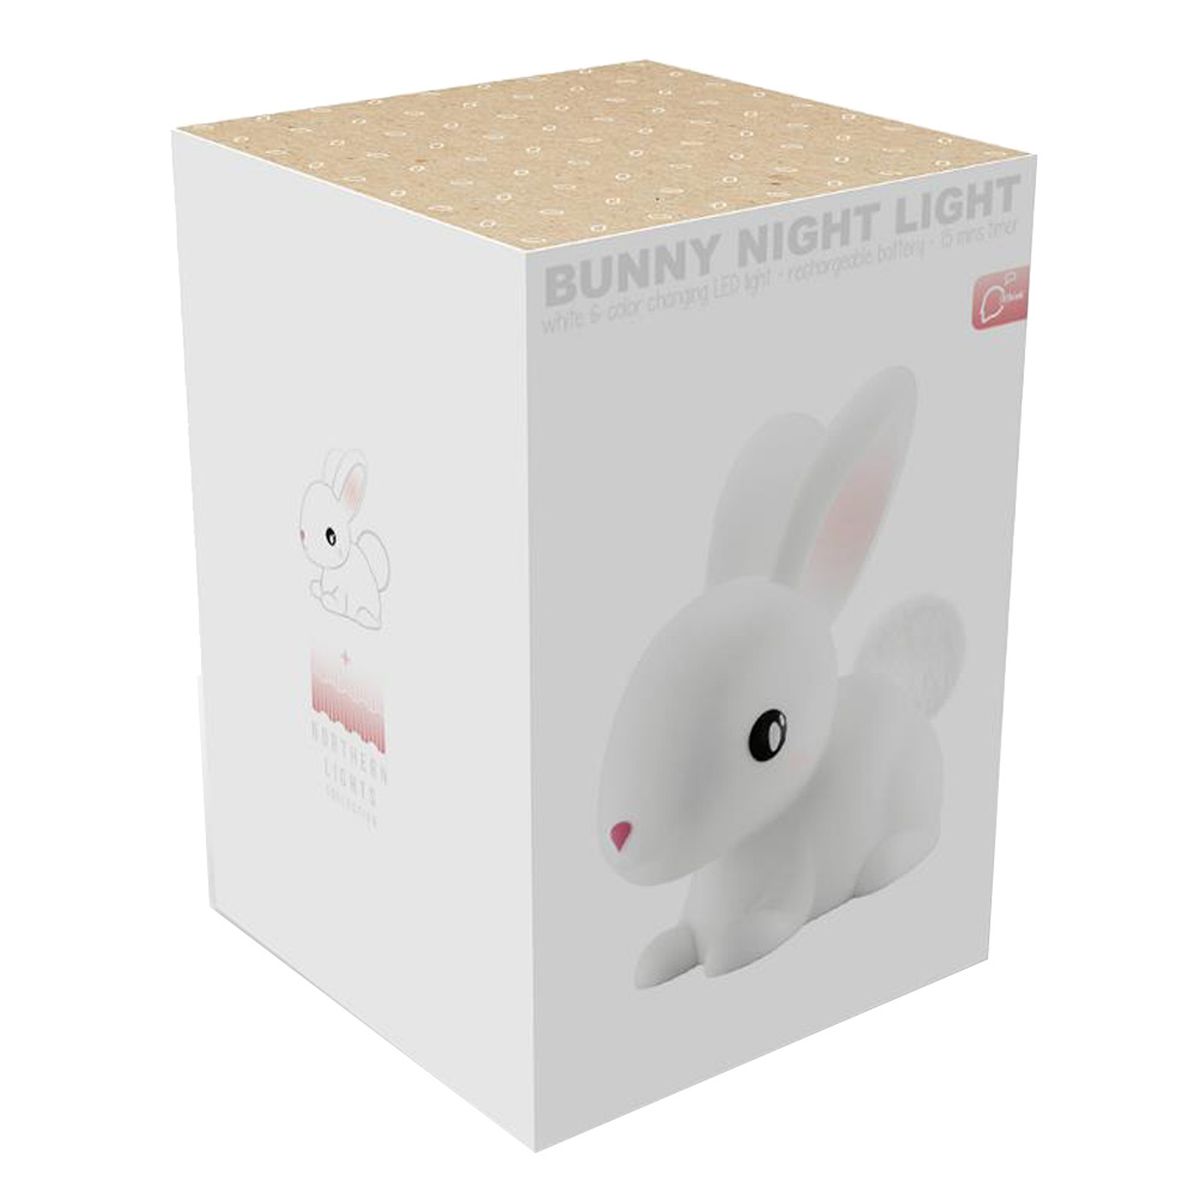 LED Bunny Nightlight